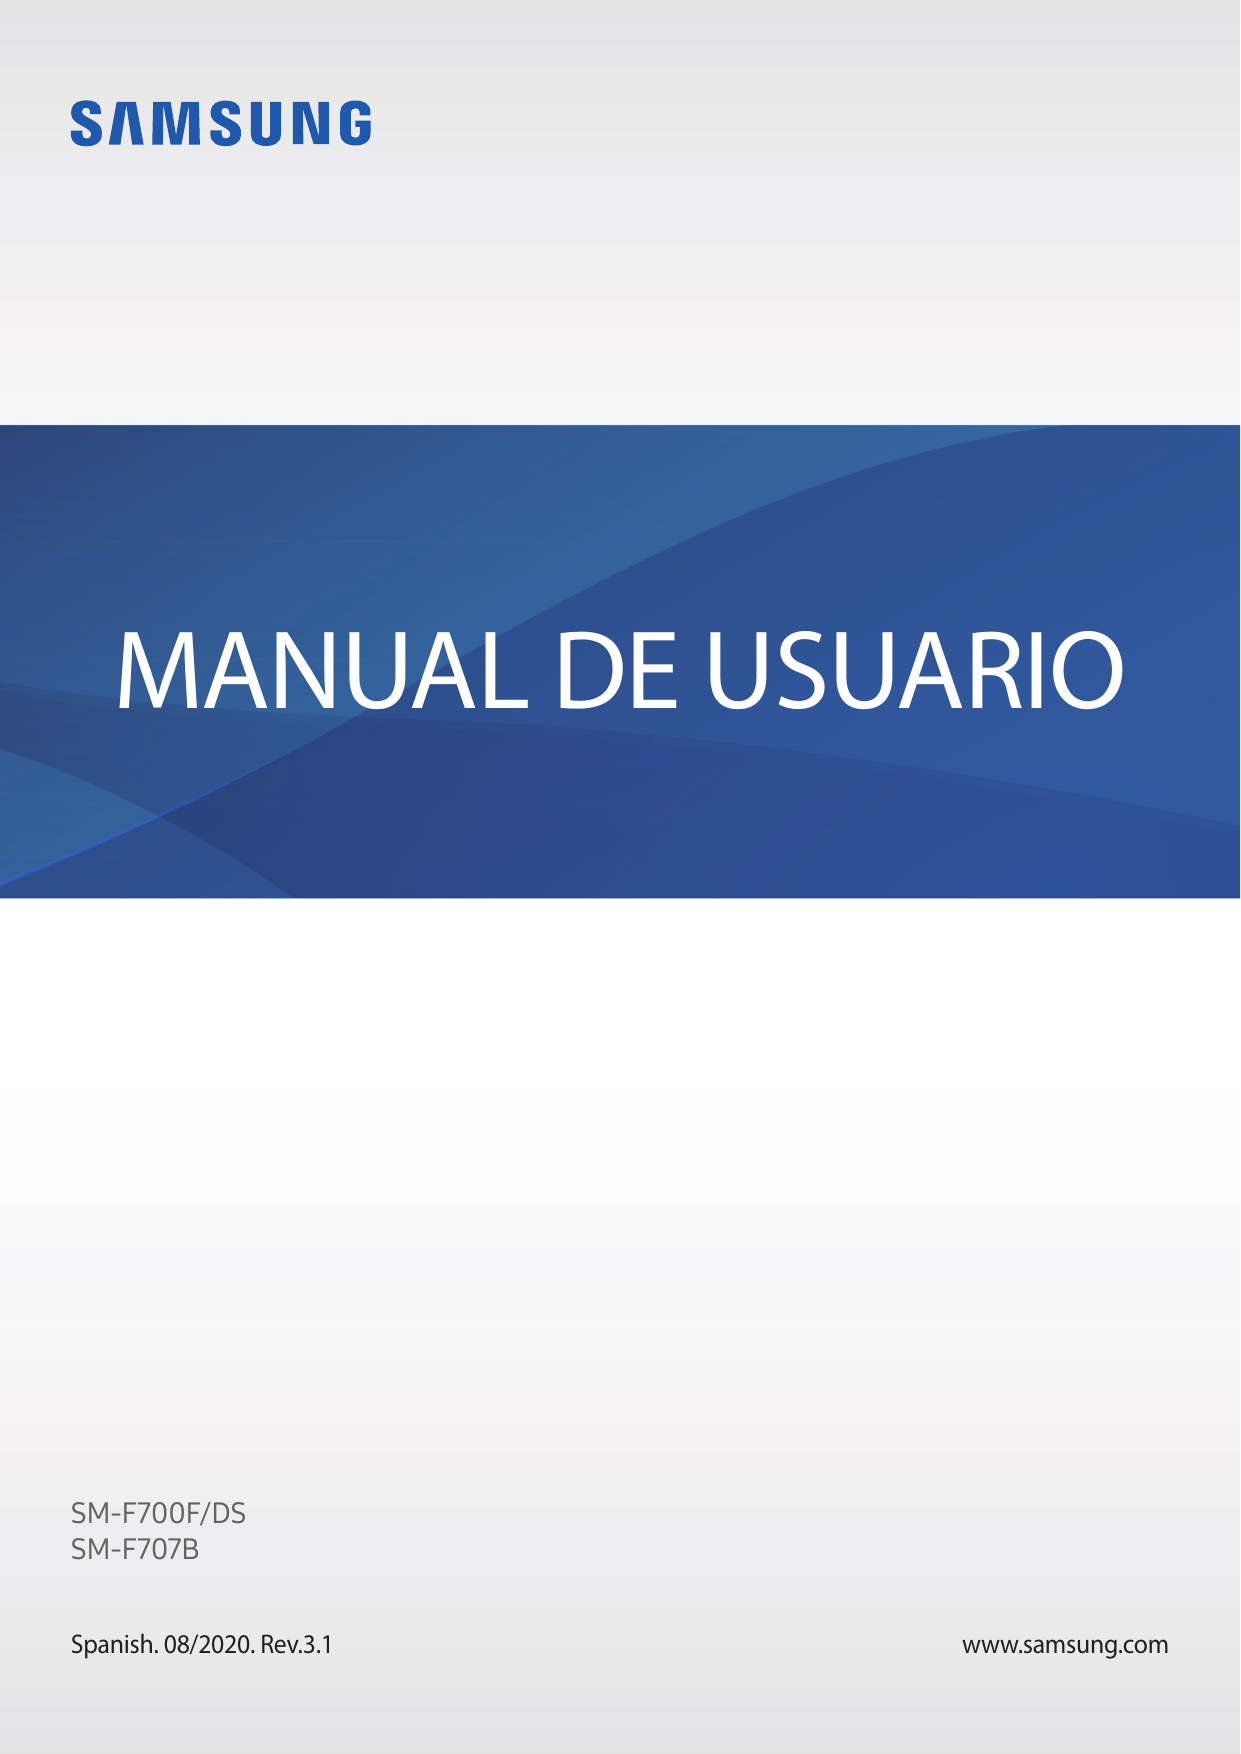 MANUAL DE USUARIOSM-F700F/DSSM-F707BSpanish. 08/2020. Rev.3.1www.samsung.com